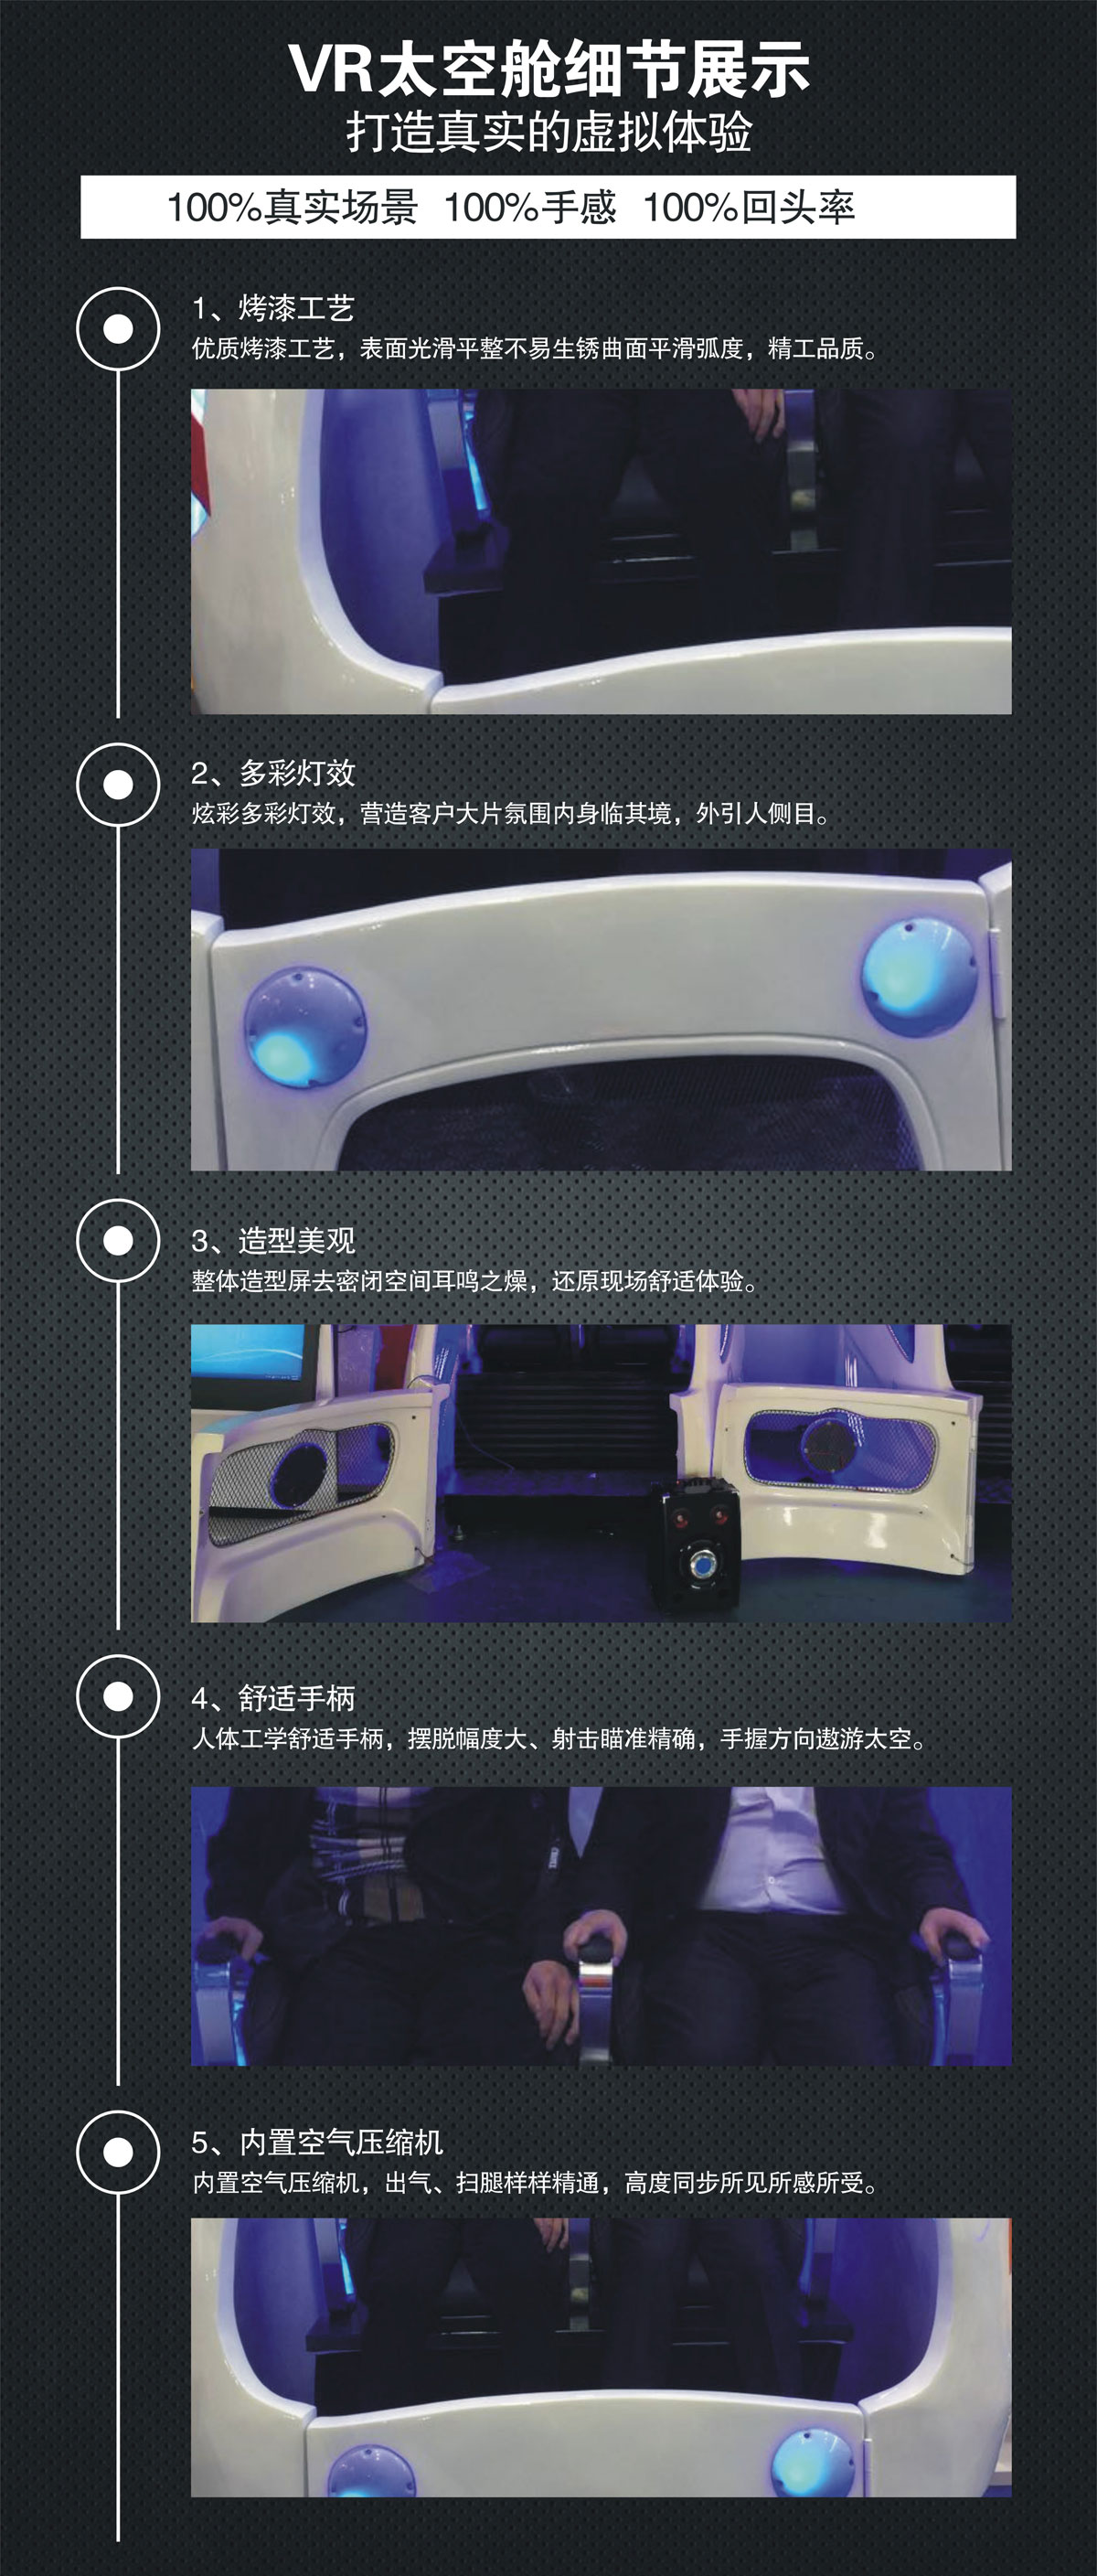 奇影幻境VR太空舱细节展示.jpg